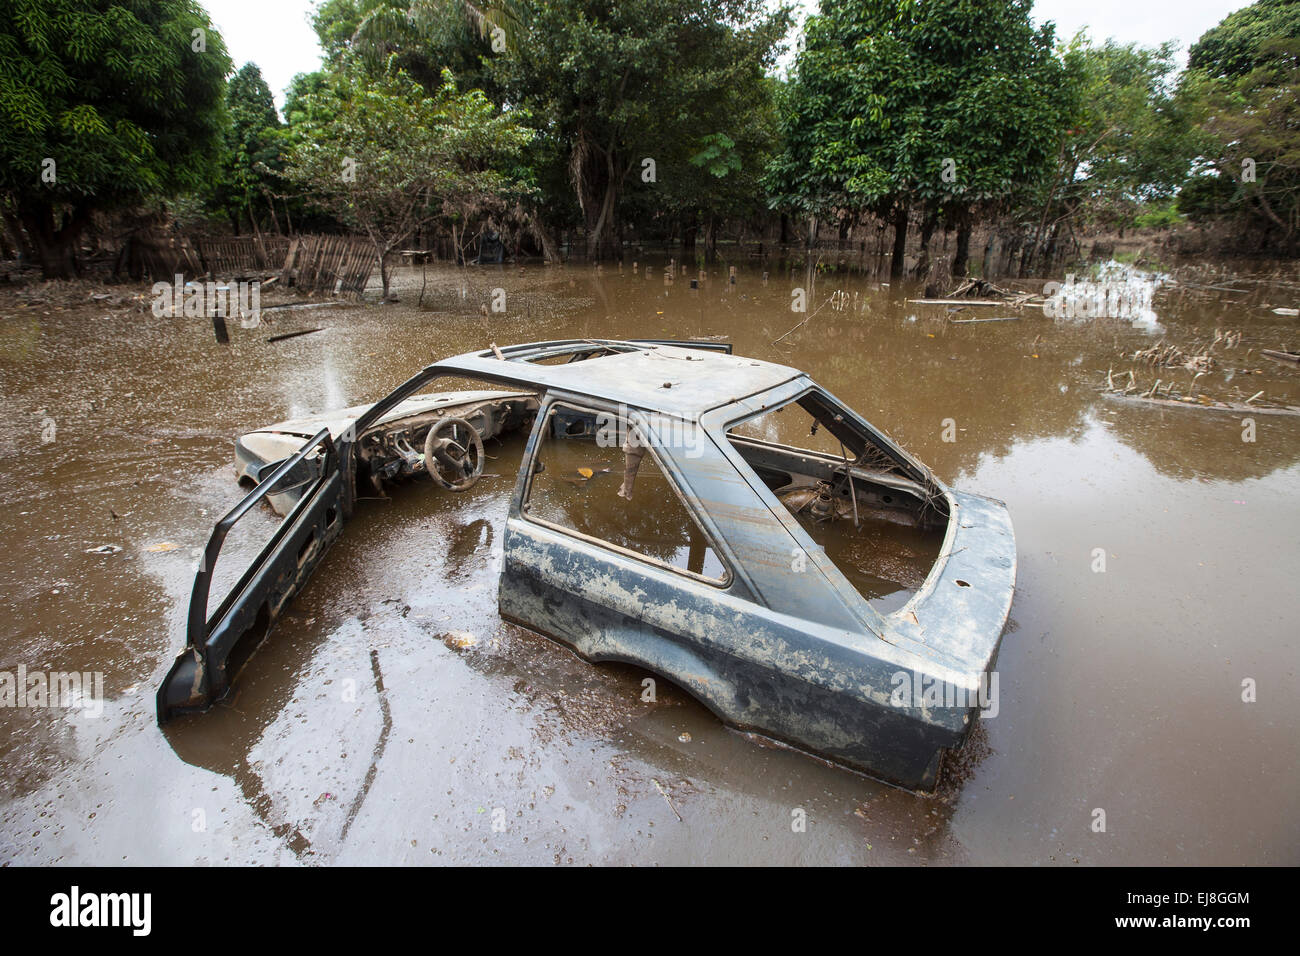 2015 Inondations en Amazonie brésilienne, voiture détruite abandonnés dans la rue inondée à Taquari, district de la ville de Rio Branco, l'état d'Acre. Les inondations ont touché des milliers de personnes dans l'Etat d'Acre, dans le nord du Brésil, depuis le 23 février 2015, lorsque certaines des rivières de l'état, en particulier l'Acre, la rivière a débordé. De plus fortes précipitations a forcé les niveaux de la rivière plus haut encore, et le 03 mars 2015, le gouvernement fédéral du Brésil a déclaré l'état d'urgence dans l'état d'Acre, où les conditions d'inondations situation a été décrite comme la pire en 132 ans. Banque D'Images